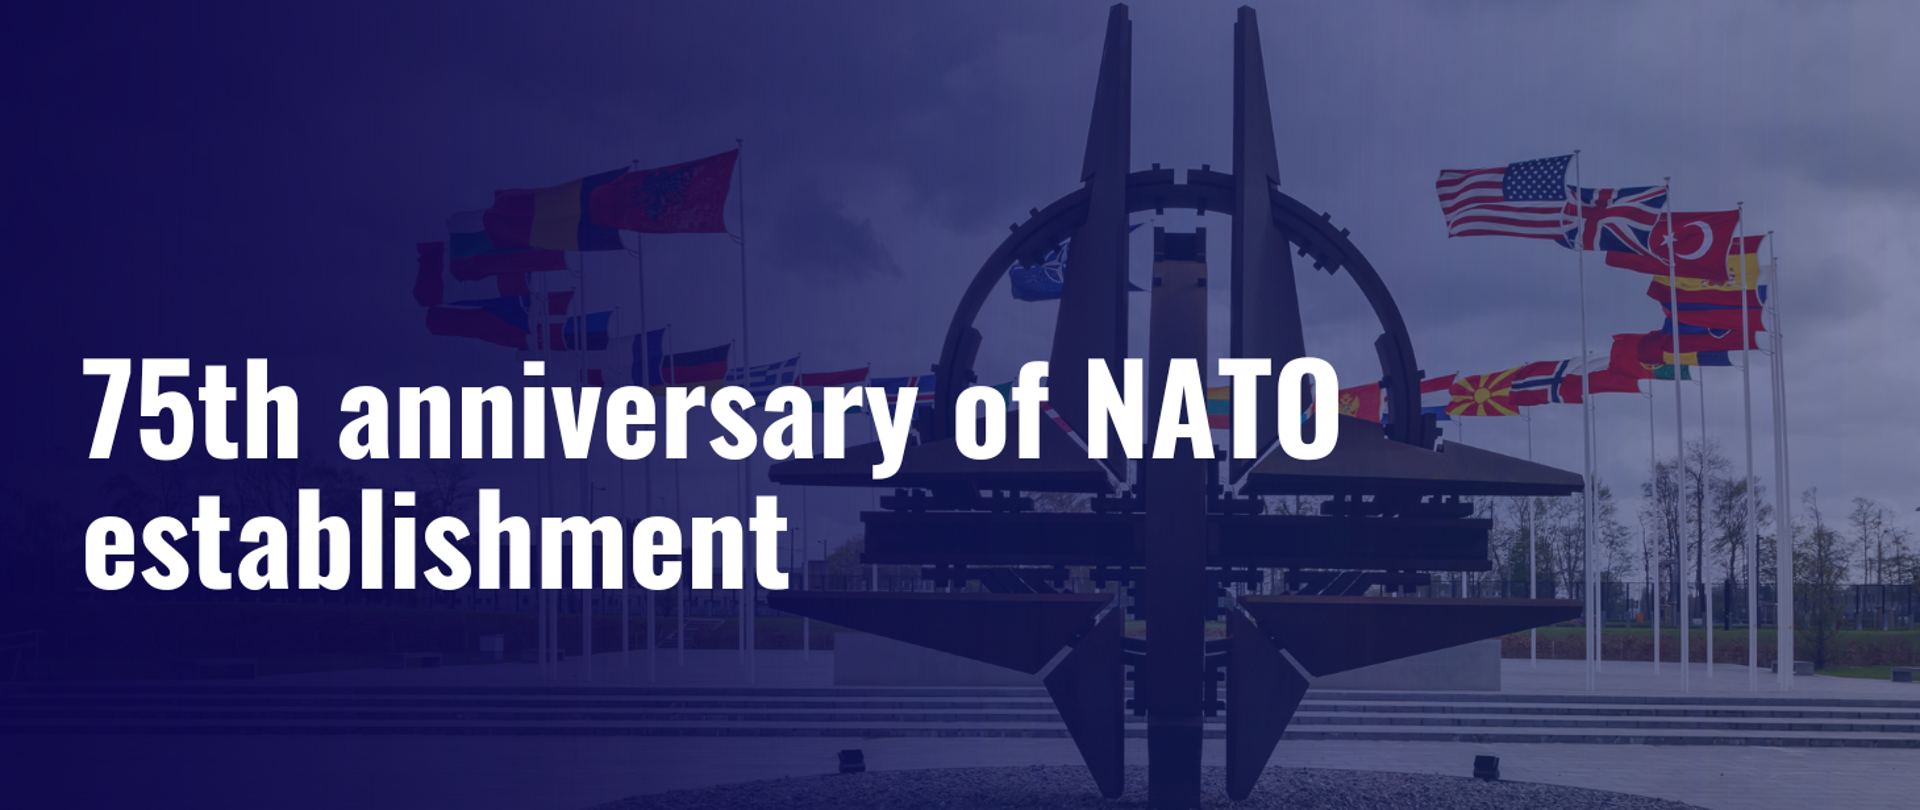 75th anniversary of NATO establishment